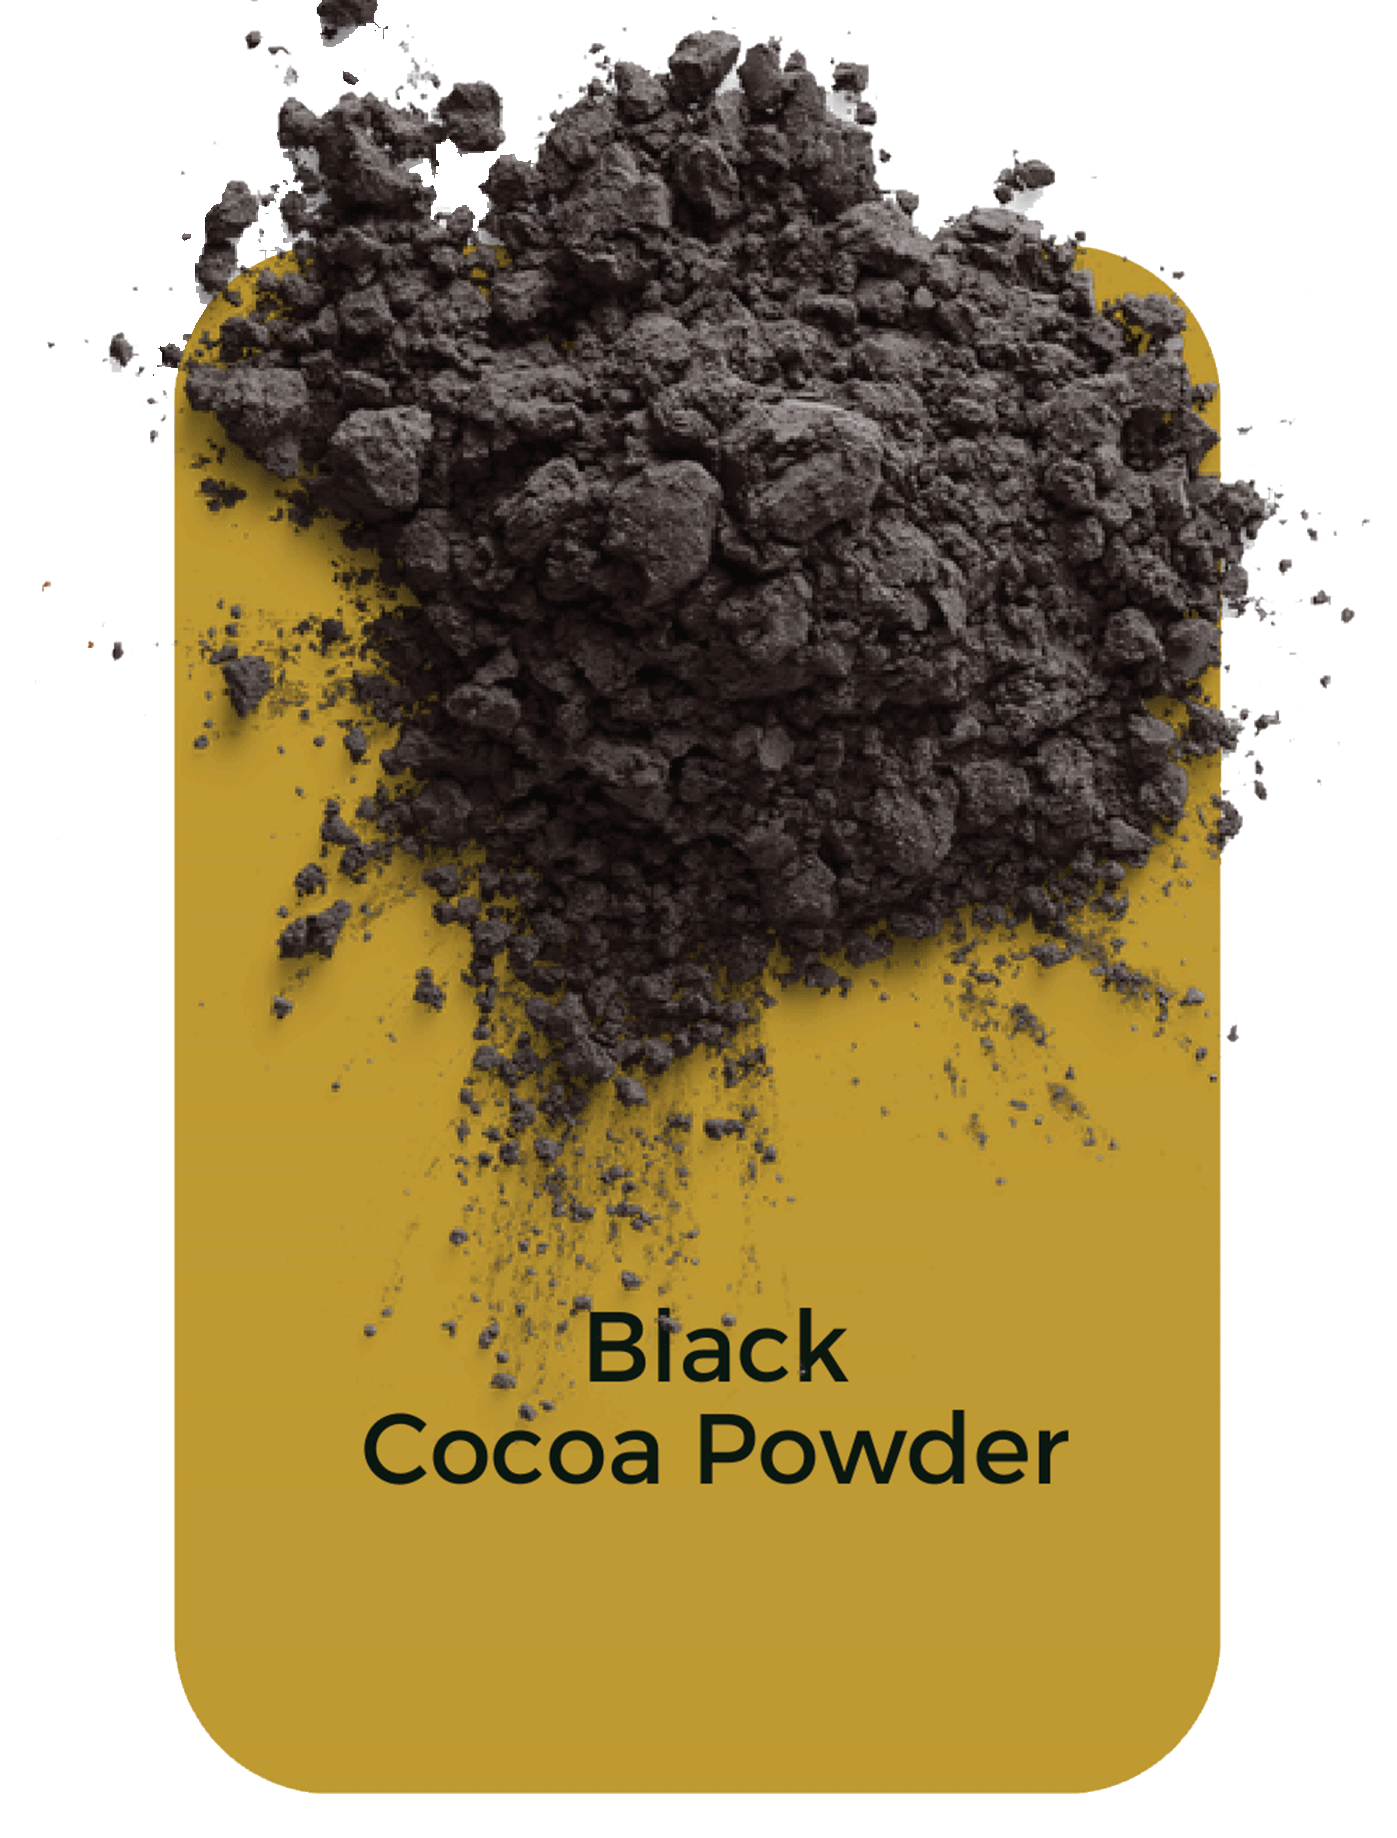 Black-cocoa-powder